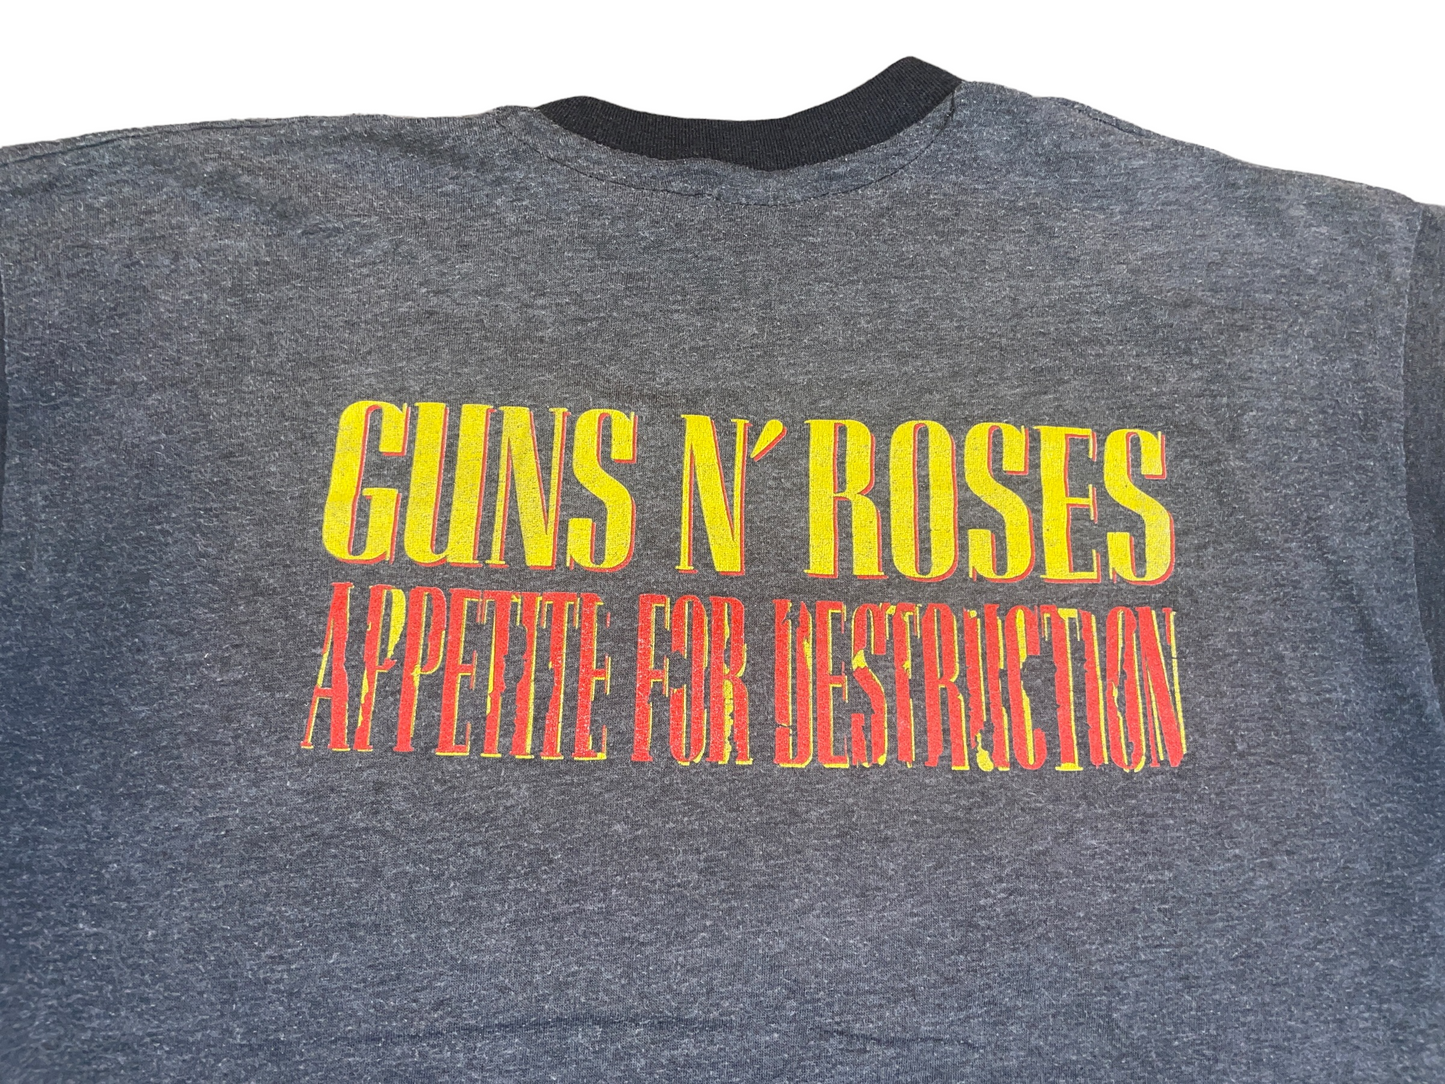 Vintage 1988 Guns N' Roses T-Shirt